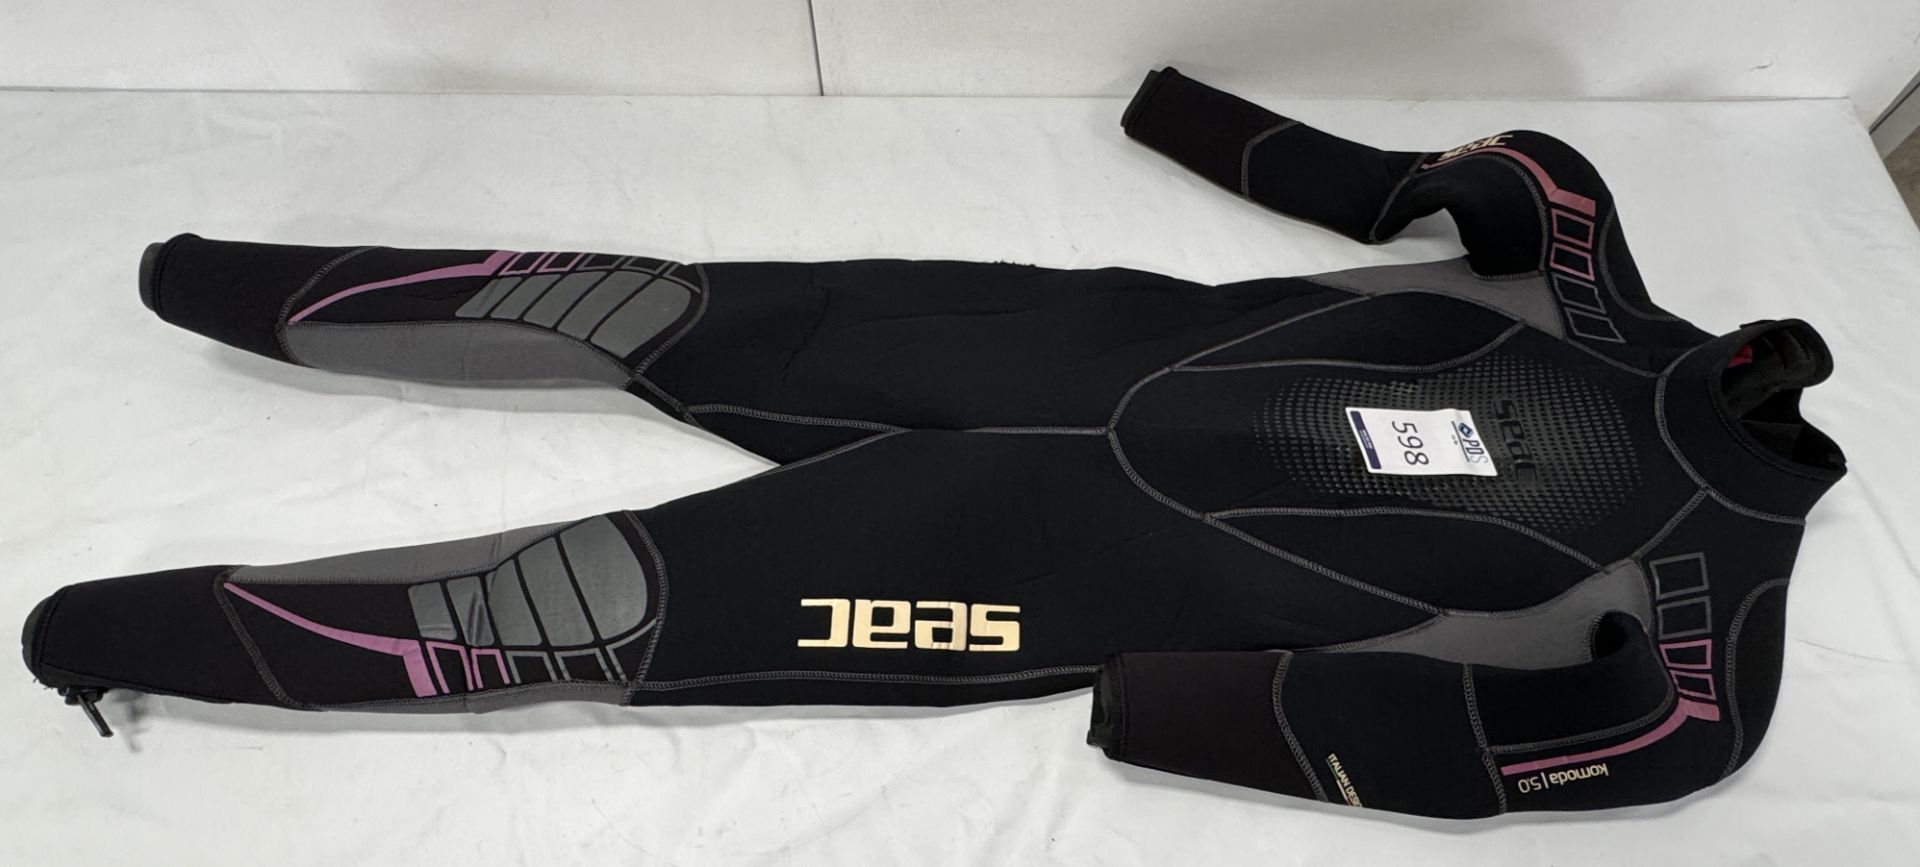 Kids Osprey Wetsuit, Aqua Lung Woman’s Wetsuit (Size M), Beuchat & Seac Wetsuits (Location: - Bild 2 aus 10